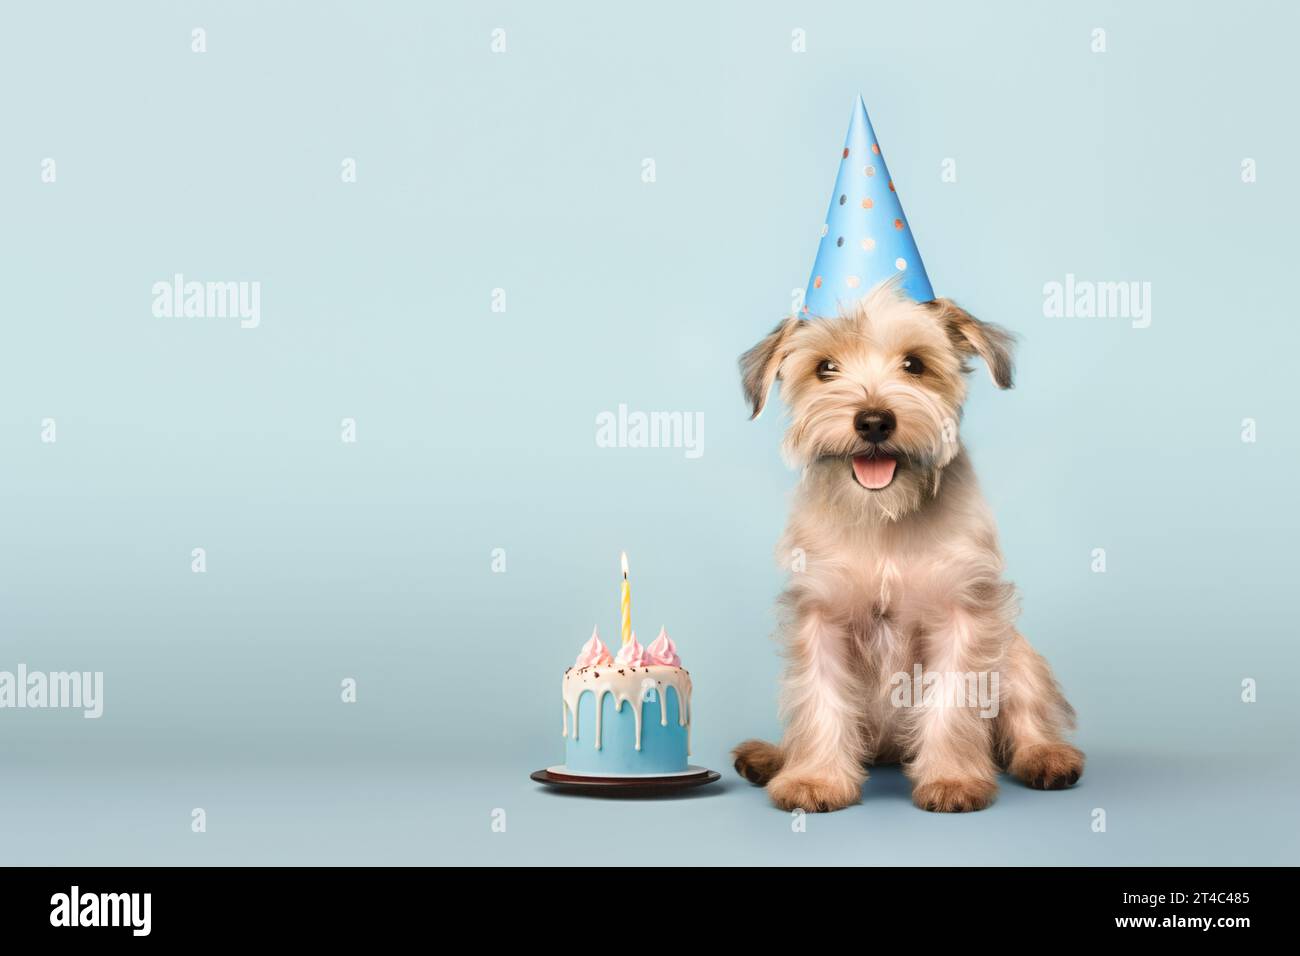 Allegro cane scruffato che festeggia con torta di compleanno e cappello da festa, sfondo blu con spazio per copiare da un lato all'altro Foto Stock